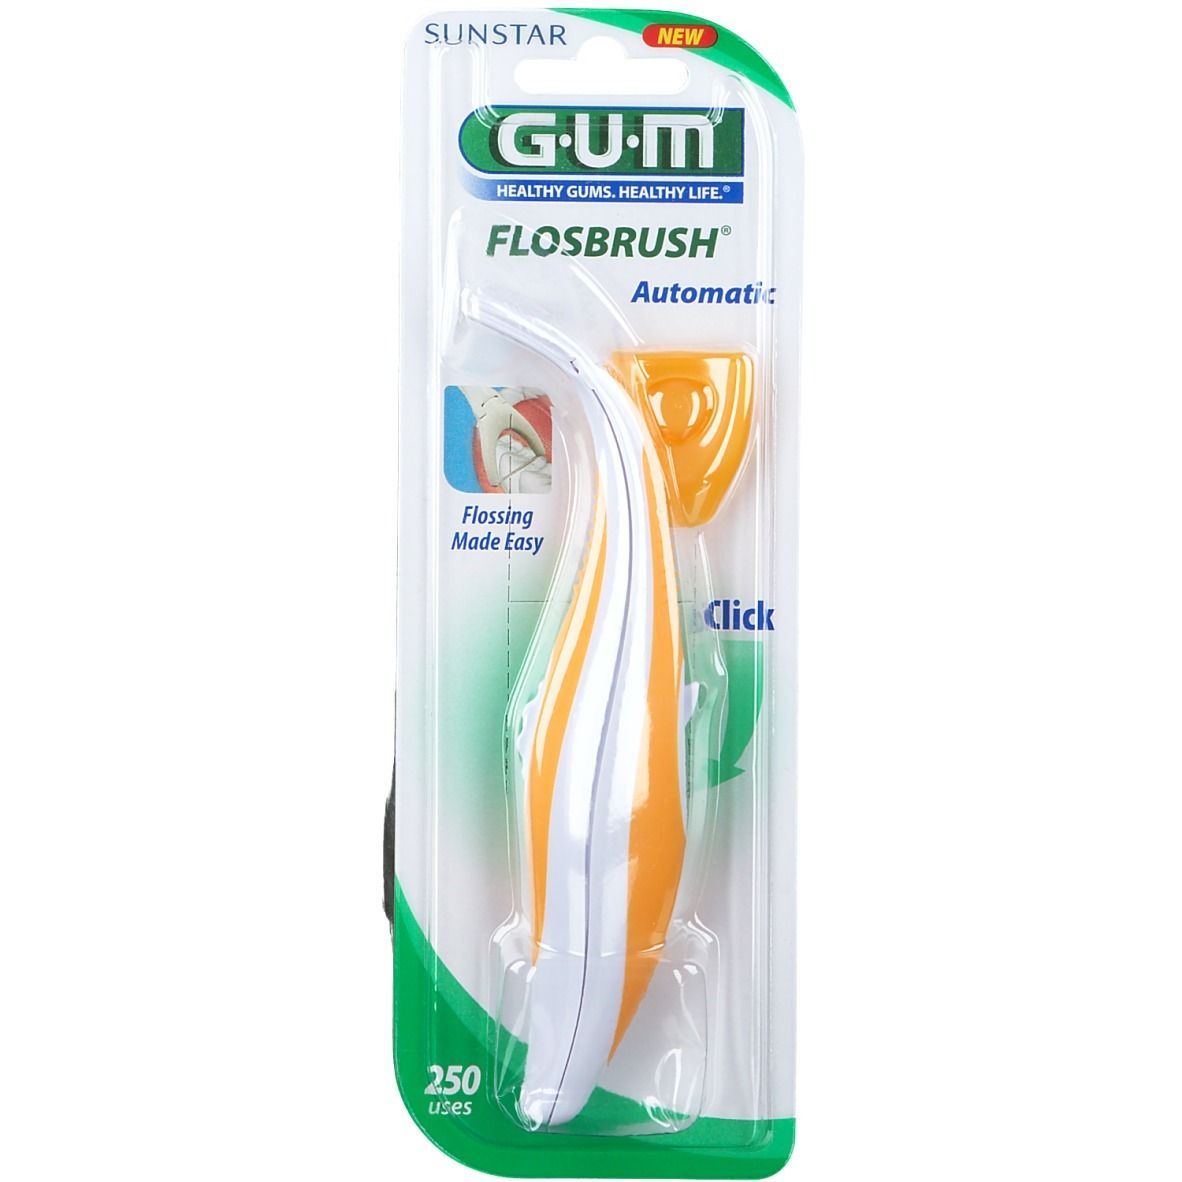 Gum Flosbrush® Automatic